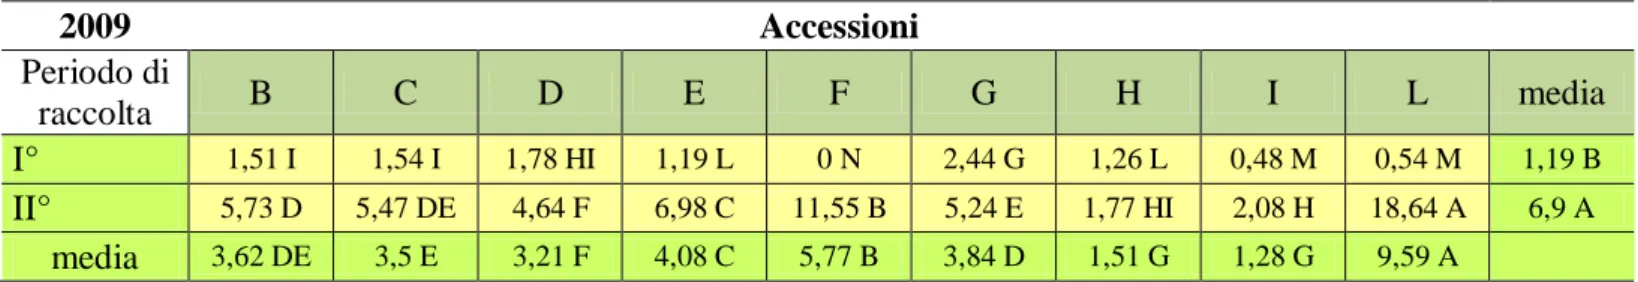 Tabella 4: produzione media in peso secco (g/pianta) delle 9 accessioni di Abelmoschus esculentus nei due momenti di raccolta (2009)